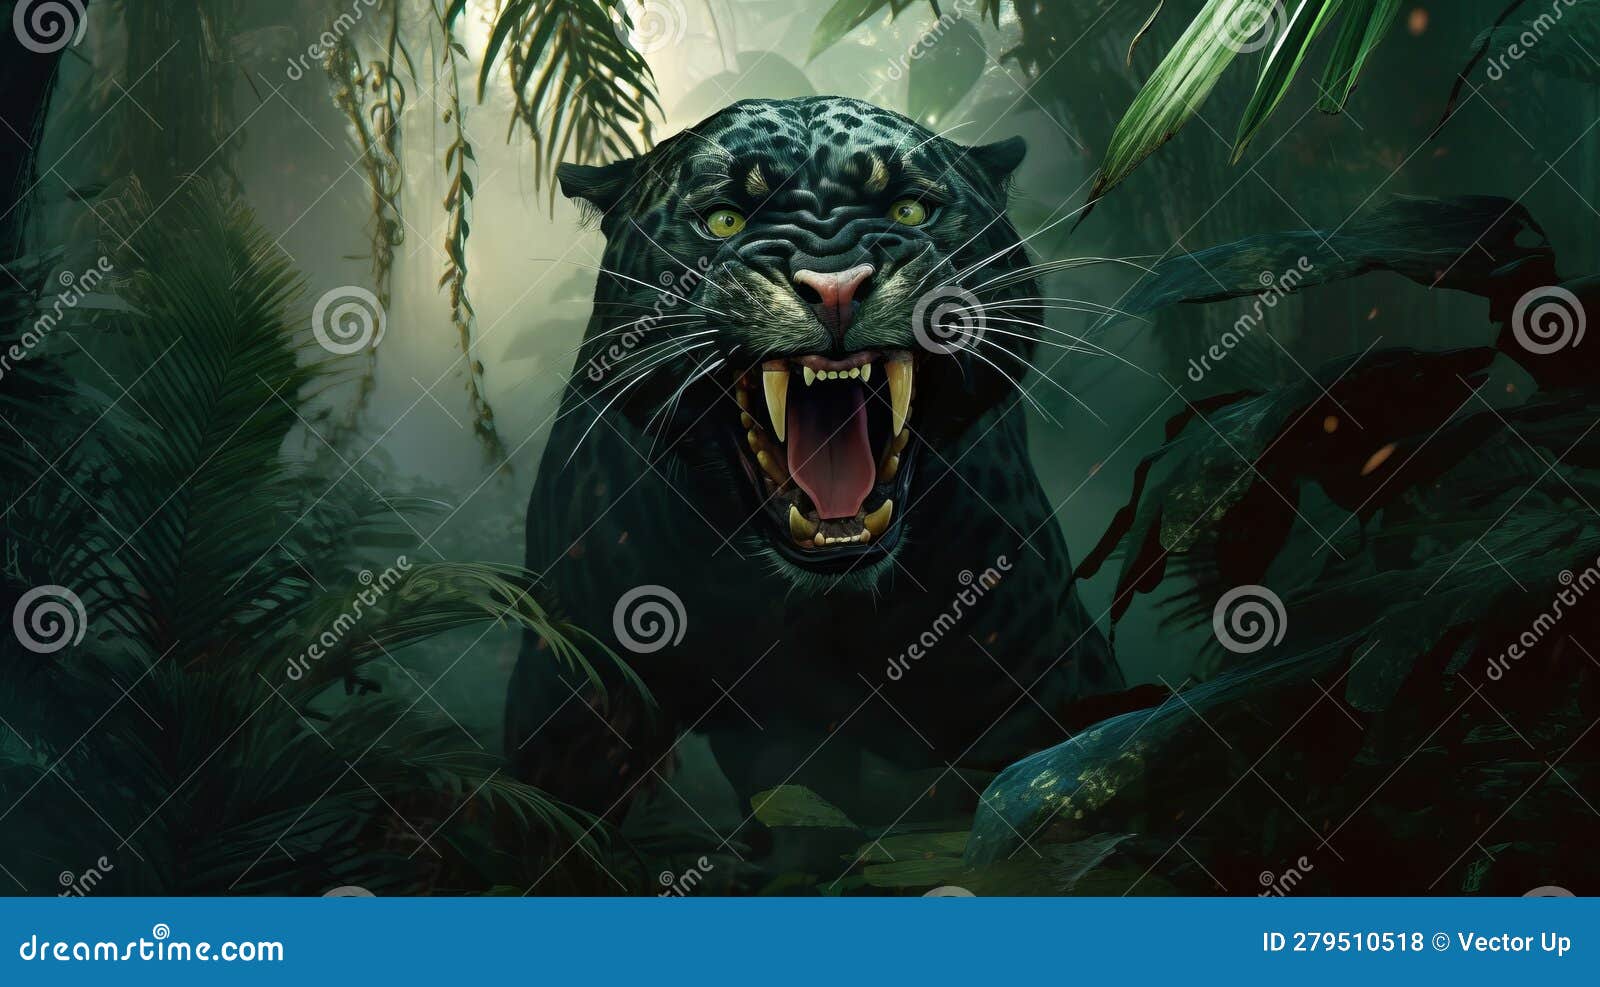 Black Panther Wallpaper - EnJpg